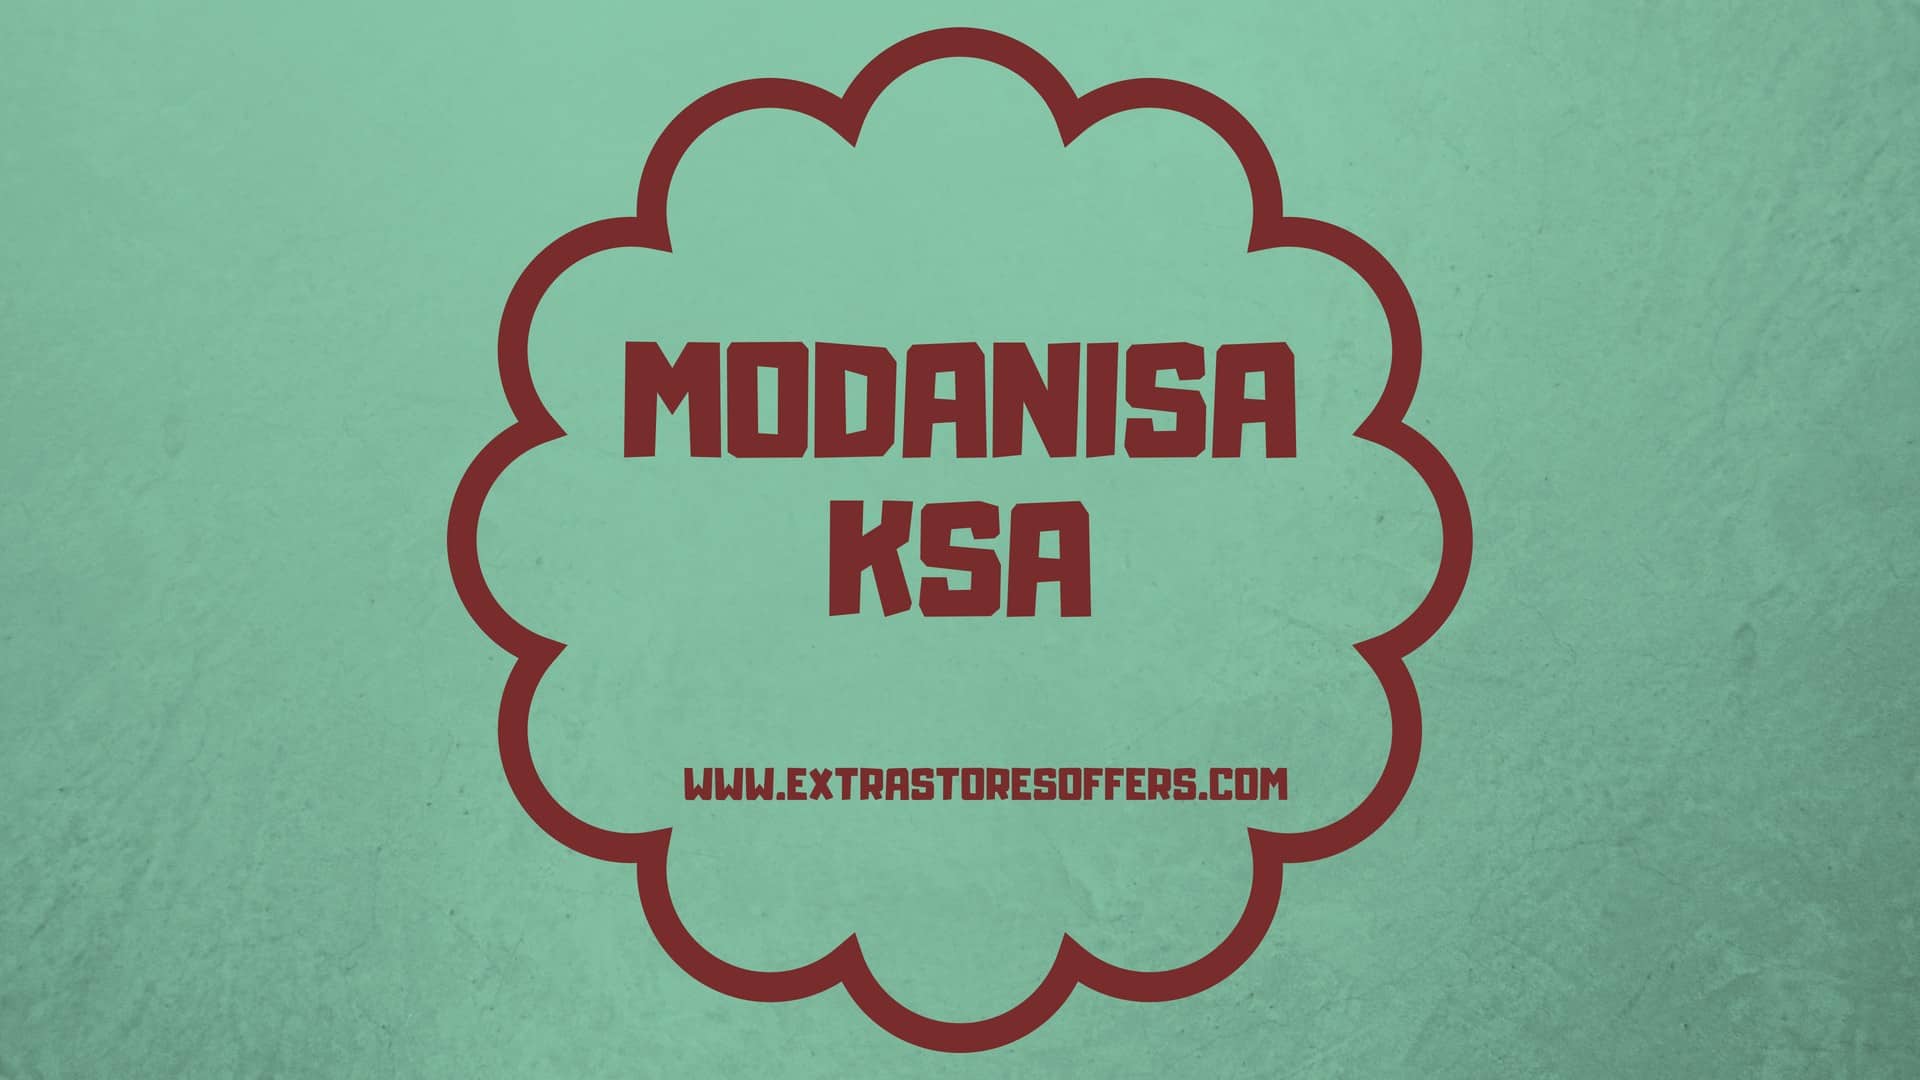 موقع modanisa